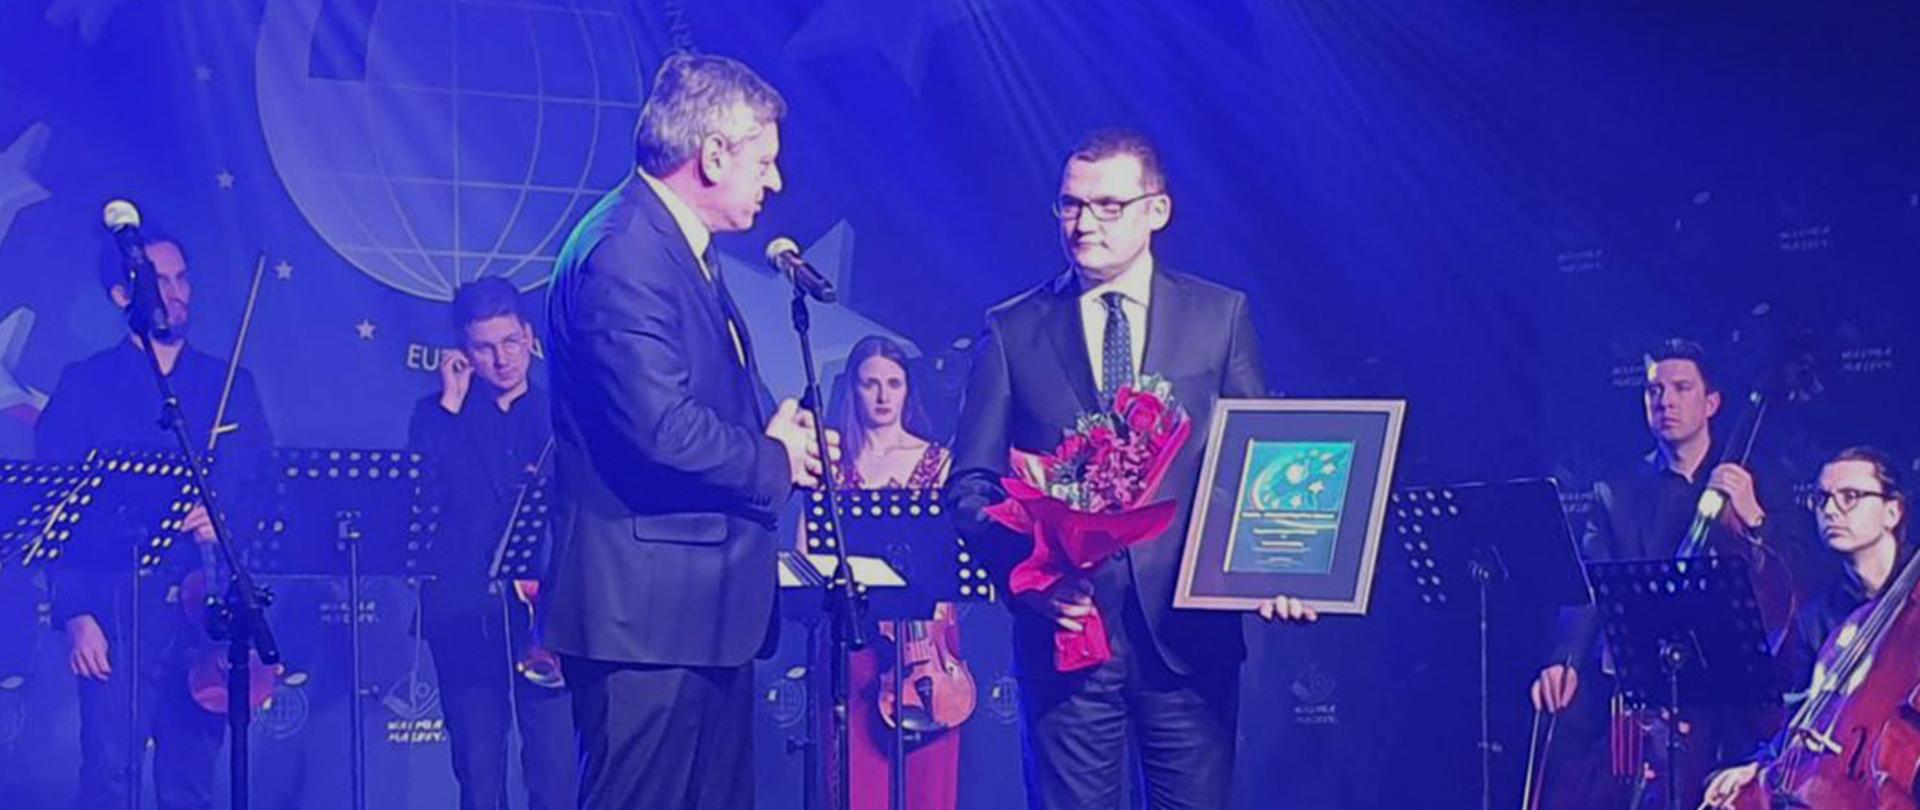 Wiceminister Paweł Szefernaker odbierający nagrodę podczas Europejskiego Kongresu Samorządów w Mikołajkach.